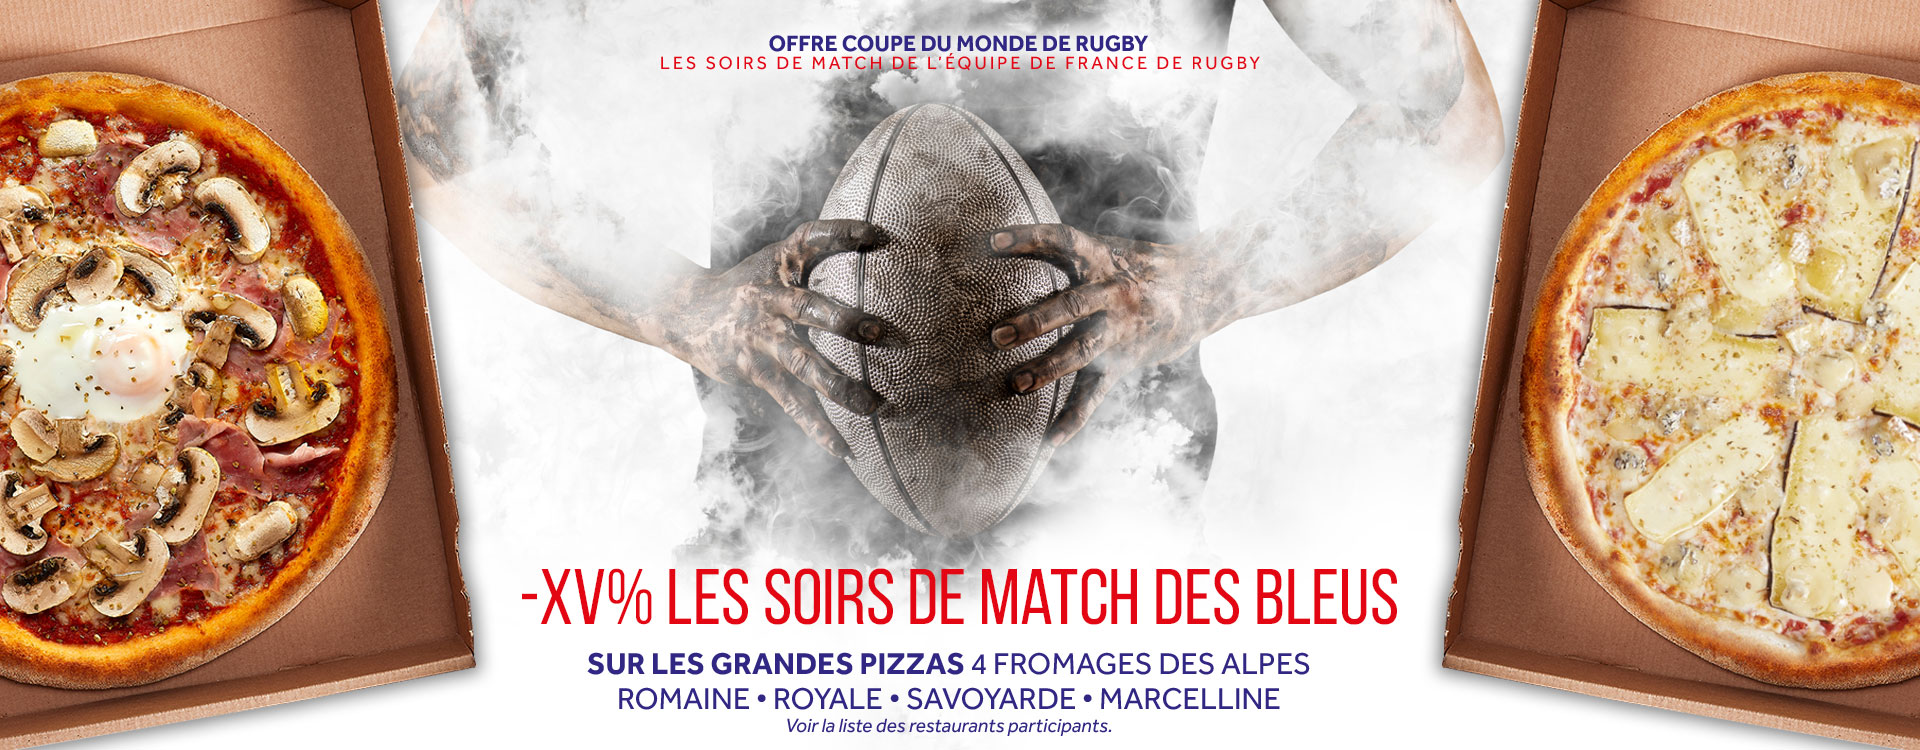 Offre Coupe du Monde de Rugby Basilic & Co